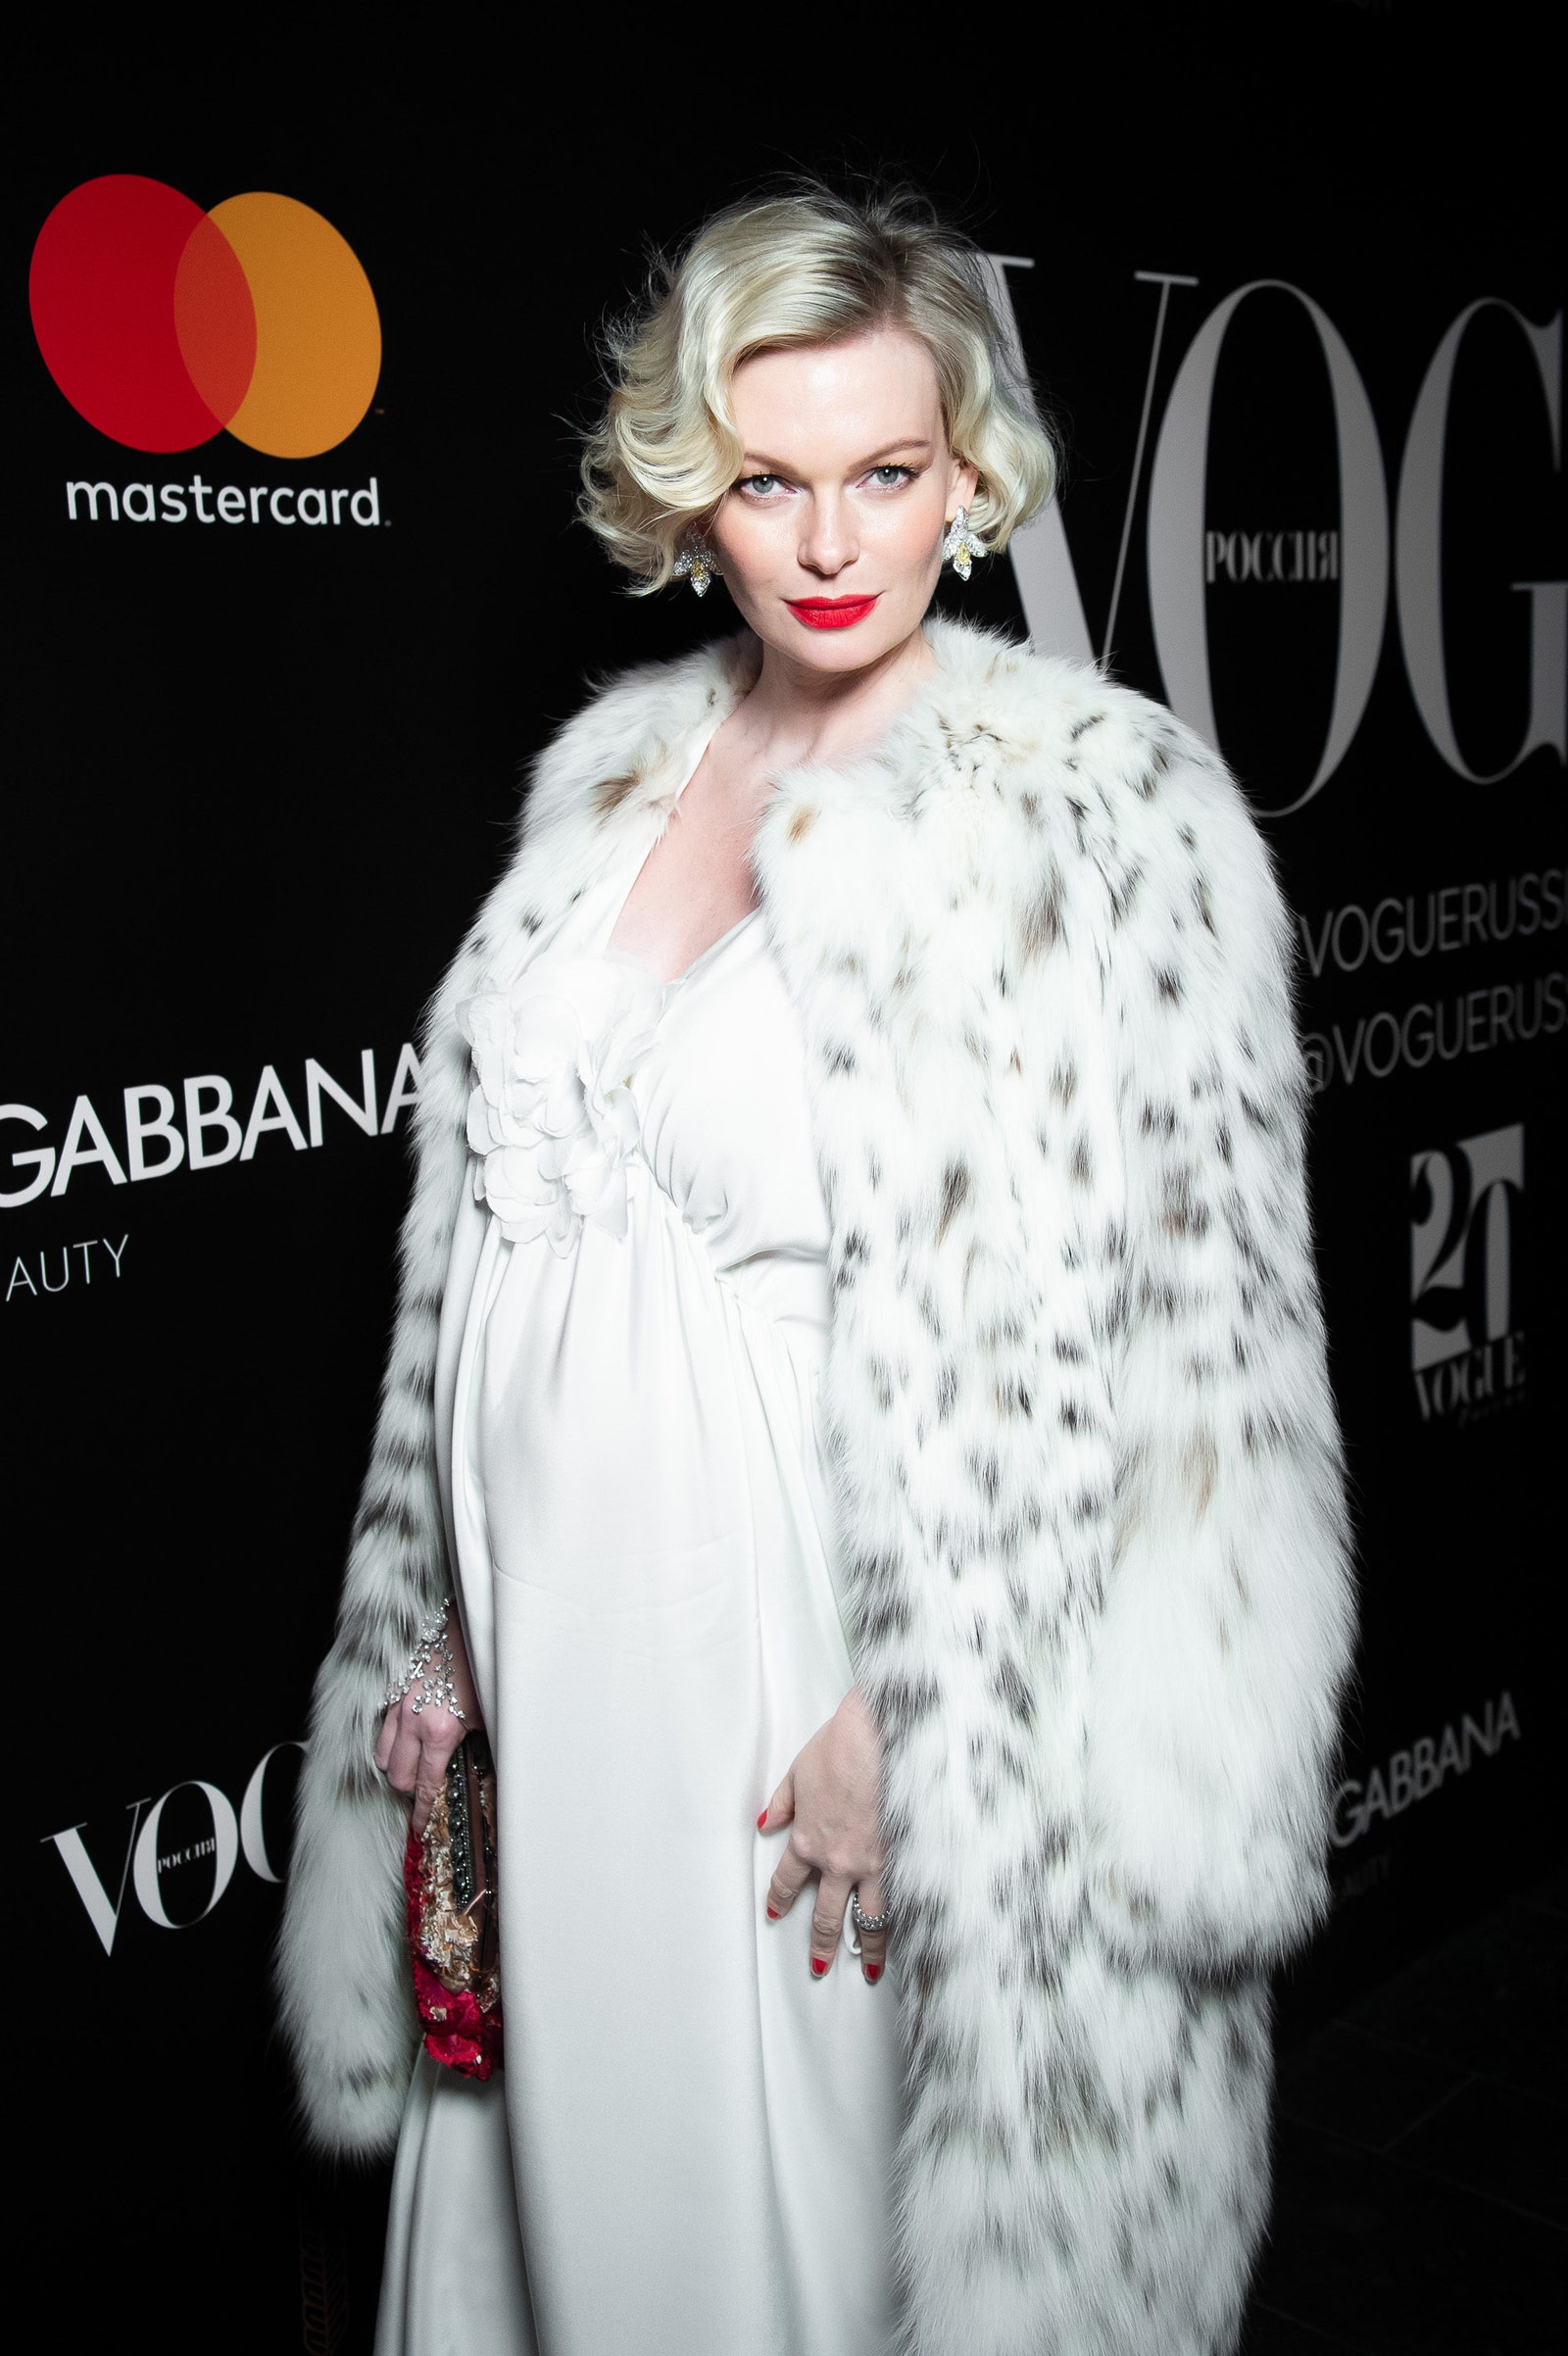 Юлия Визгалина на юбилее журнала Vogue